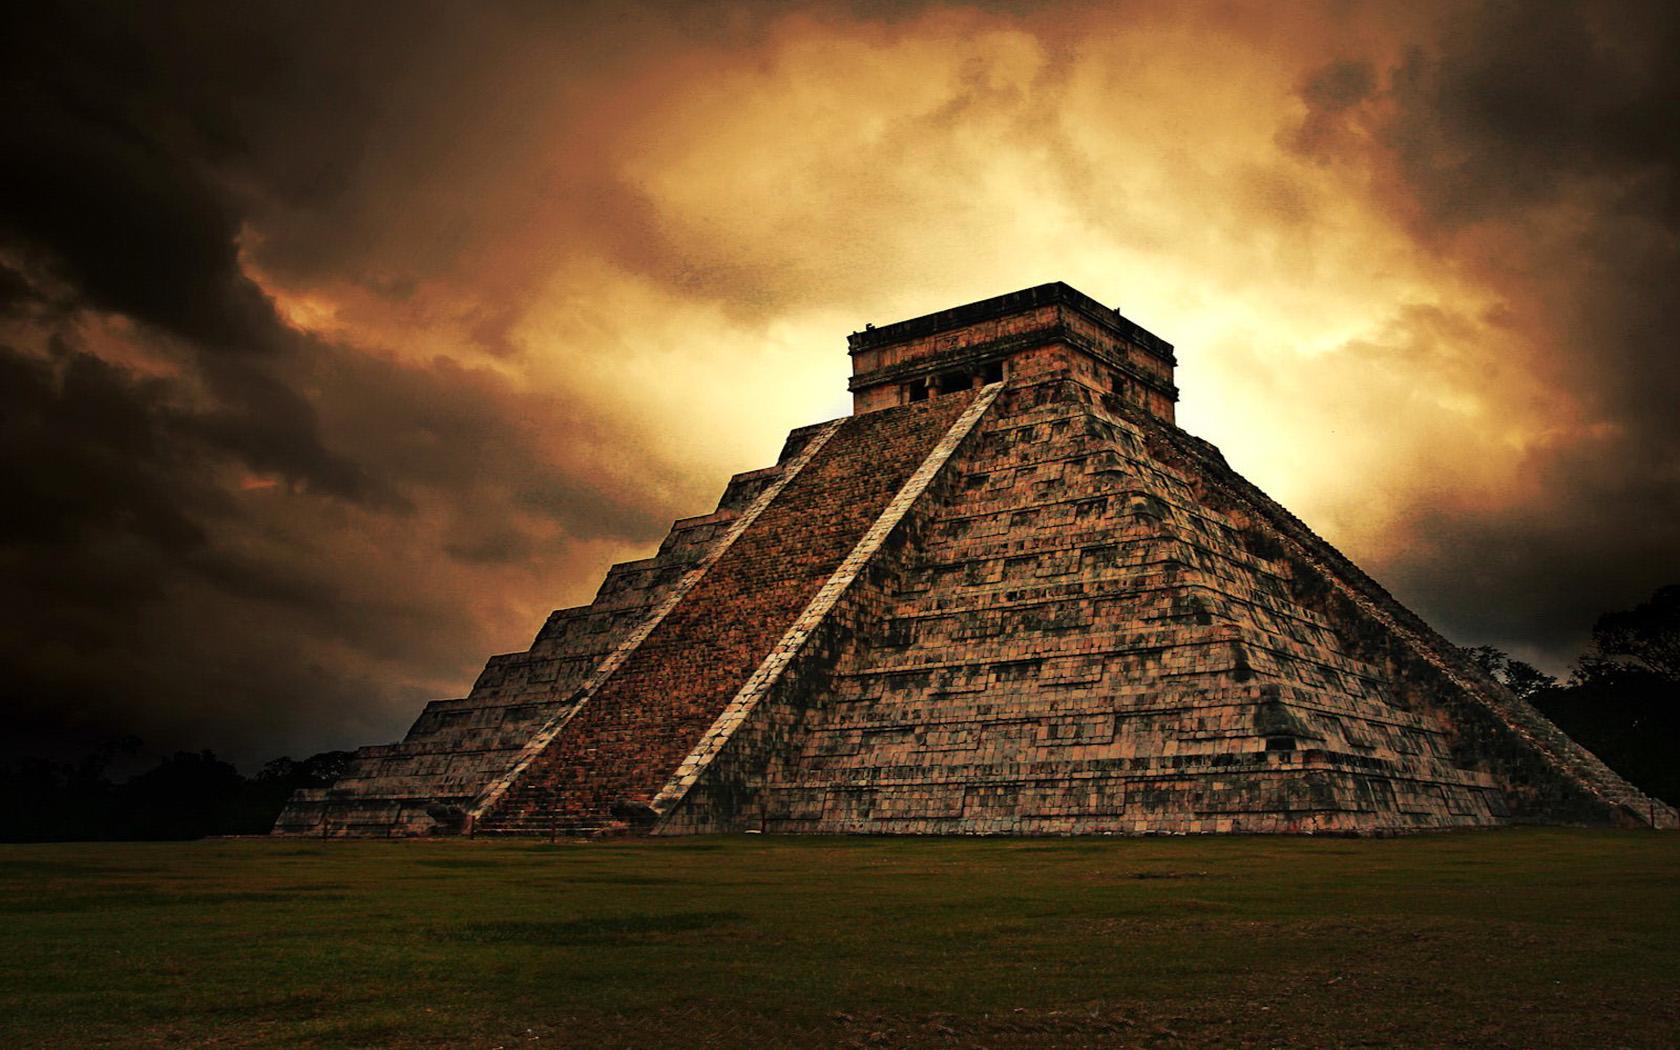 T5 Pyramid at Chichén Itzá, Yucatan Peninsula, Mexico 墨西哥玛雅金字塔